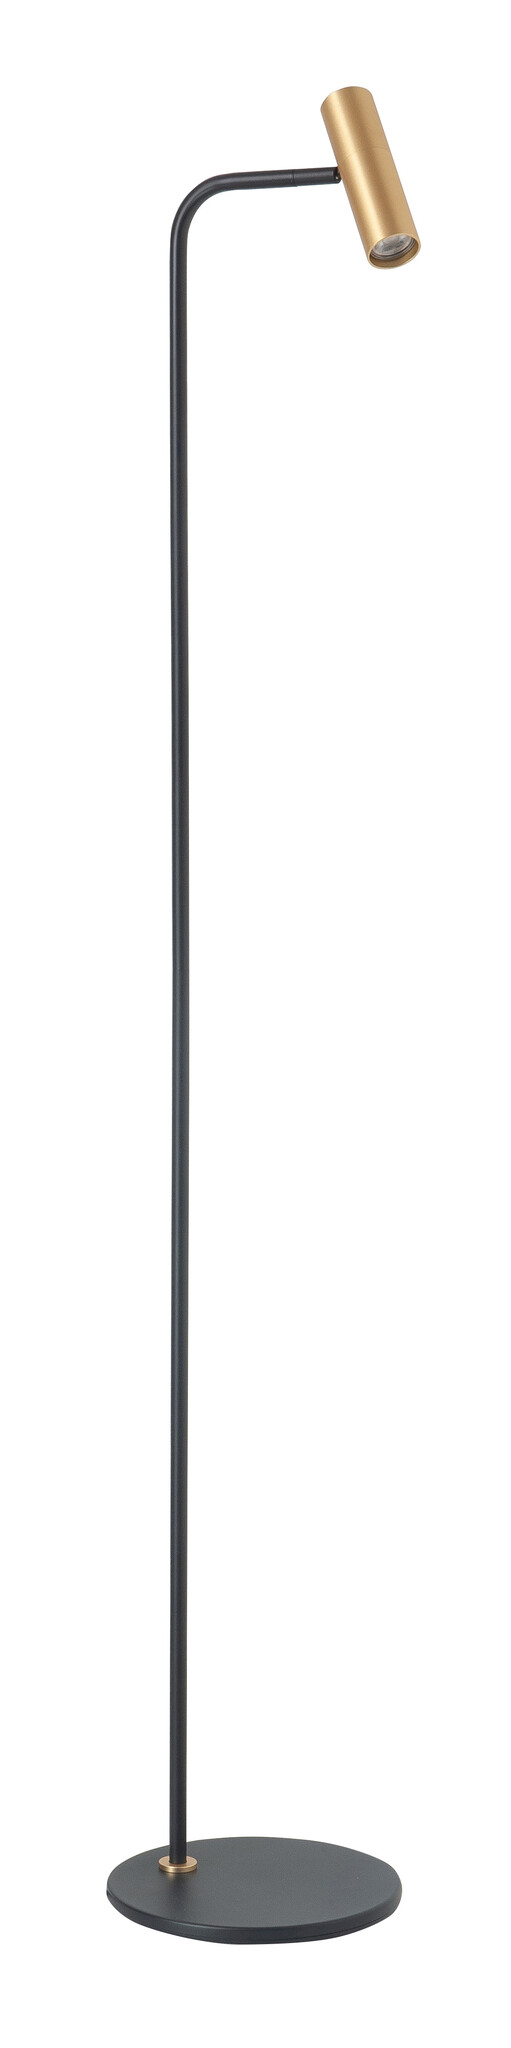 Vloerlamp Trend Zwart/Goud 1 lichts 132cm mini GU10